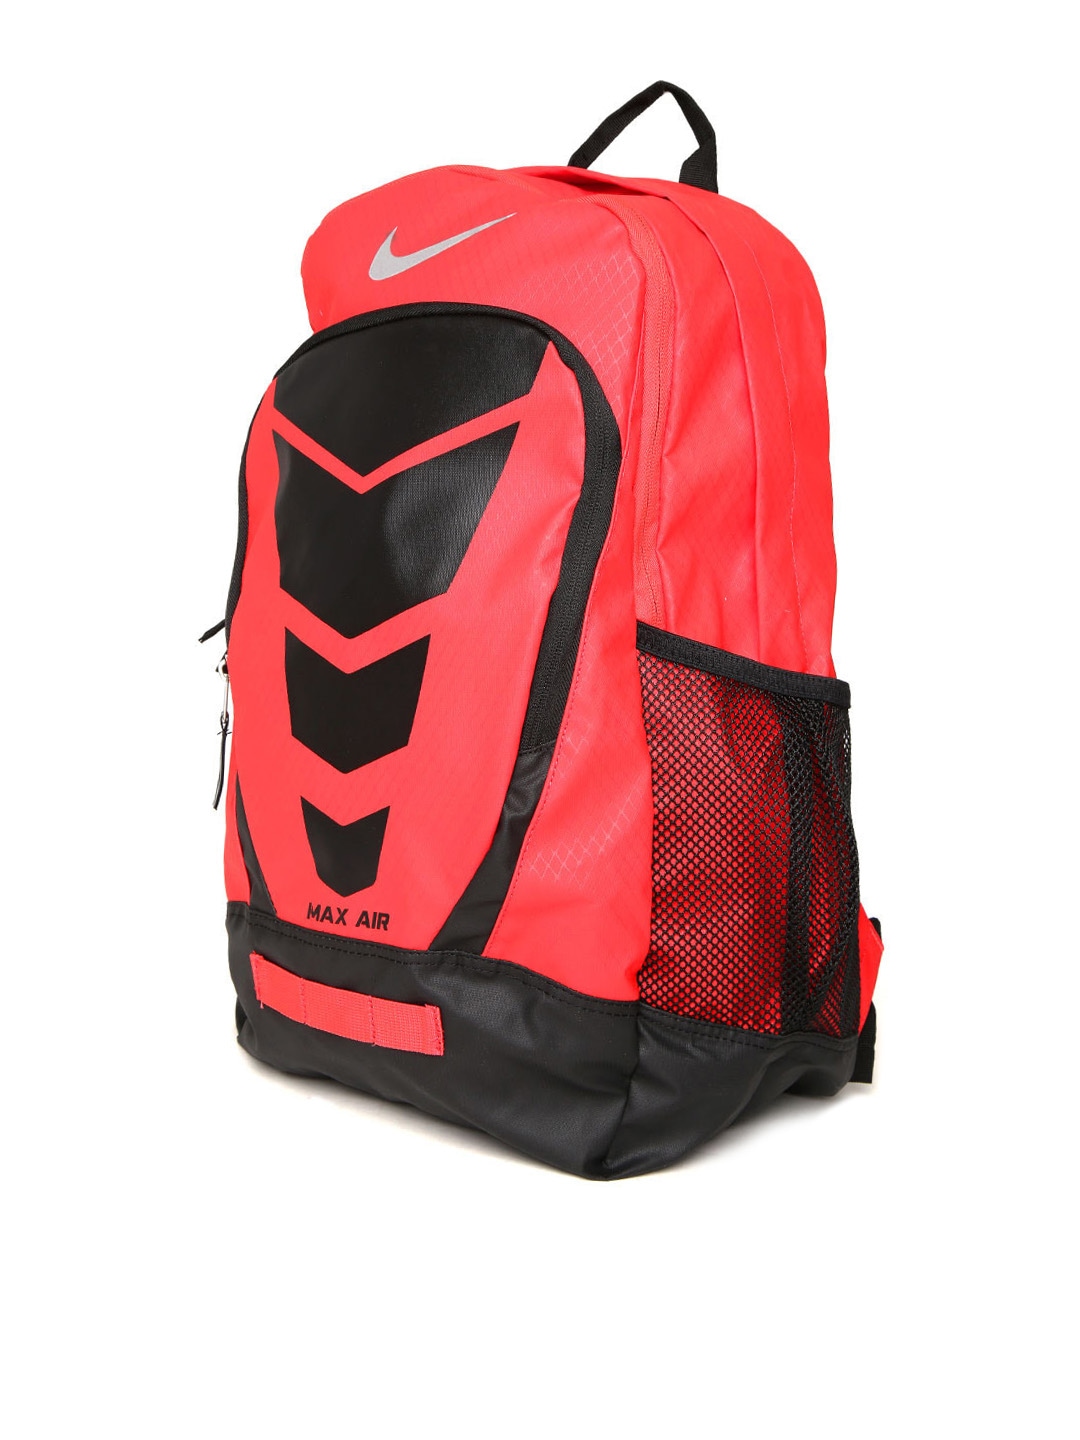 Myntra Nike Unisex Red & Black Max Air Vapor Printed Backpack 734777 | Buy Myntra Nike Backpacks ...